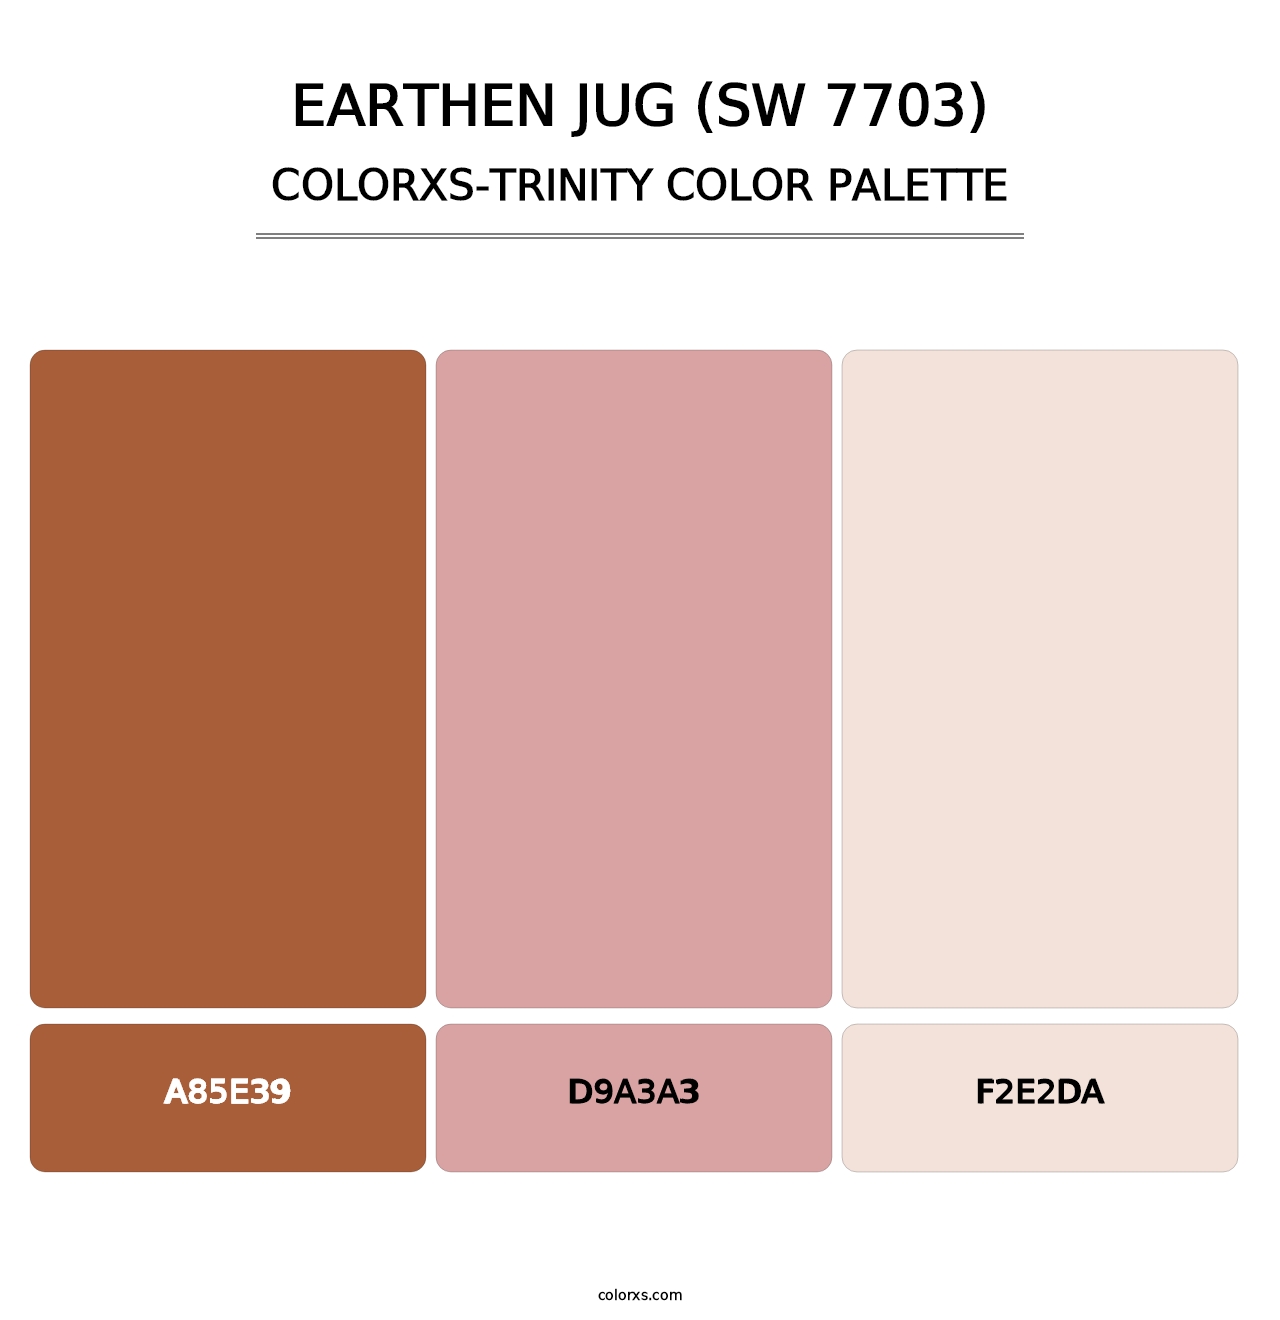 Earthen Jug (SW 7703) - Colorxs Trinity Palette